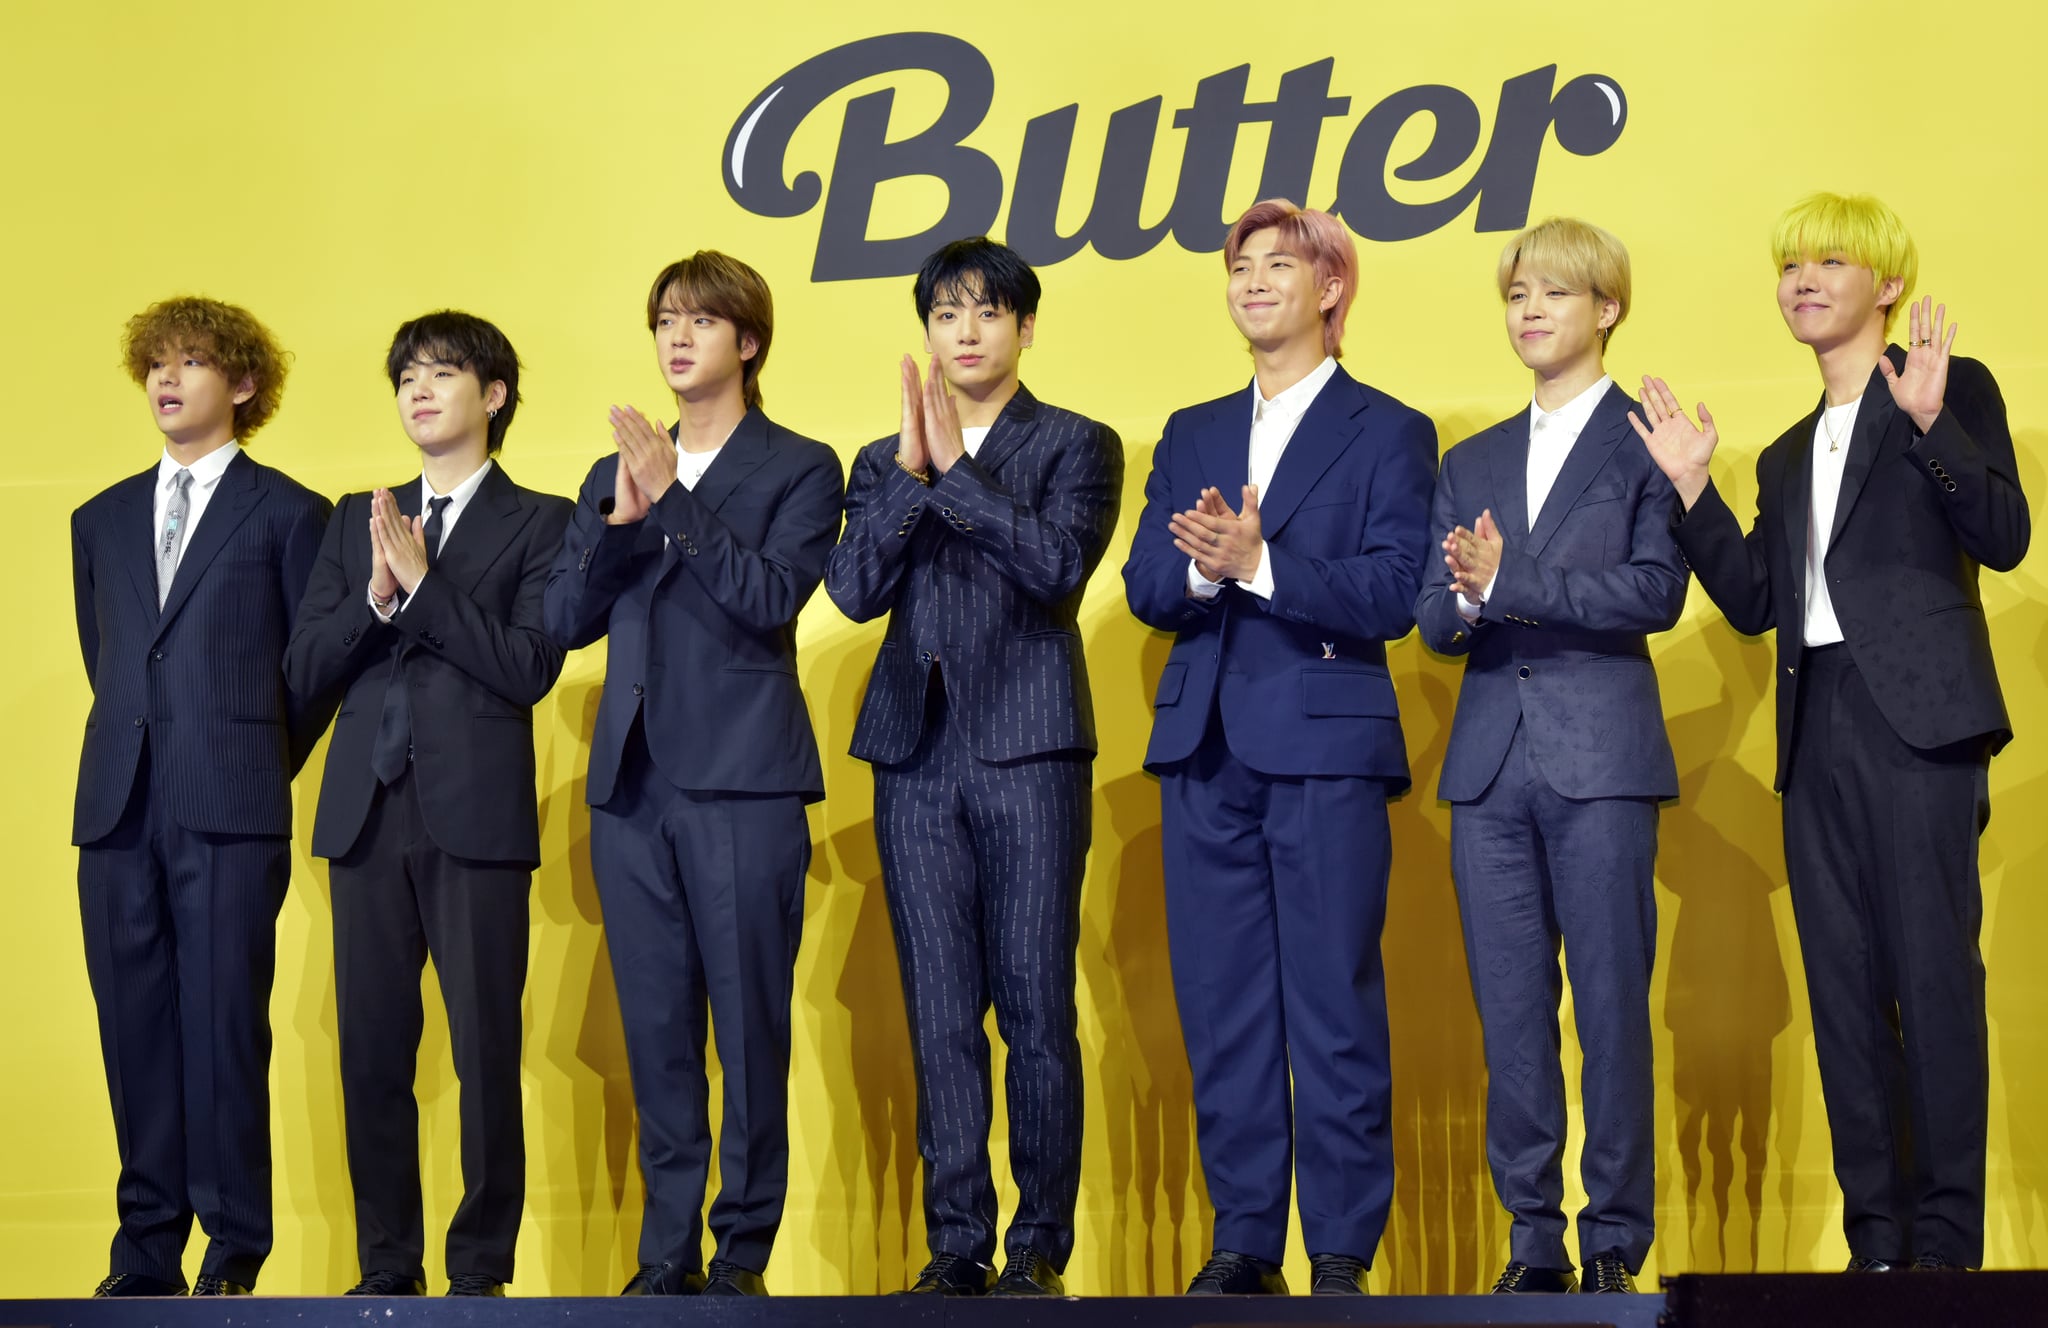 BTS Butter 2021 Jungkook Leather Jacket - RockStar Jacket